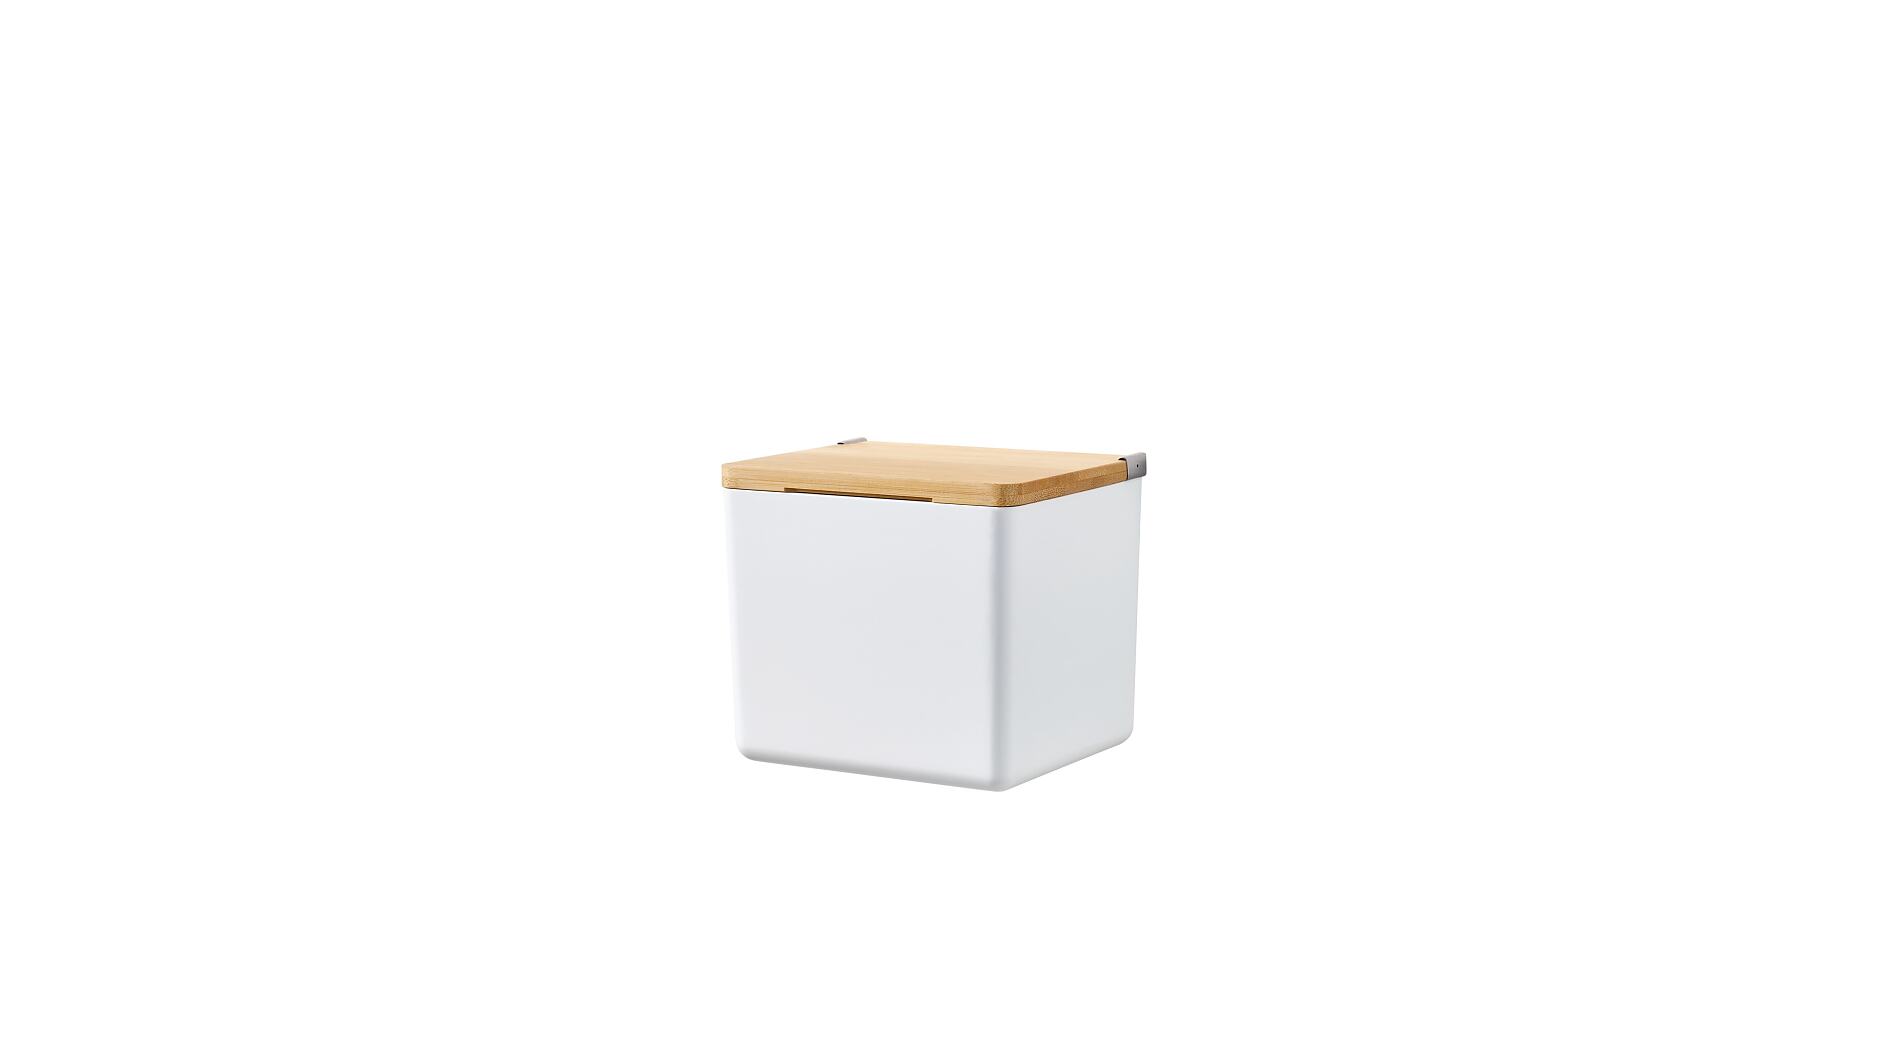 tesa® tesa® BABOO Aufbewahrungsbox klein, mit Bambusdeckel